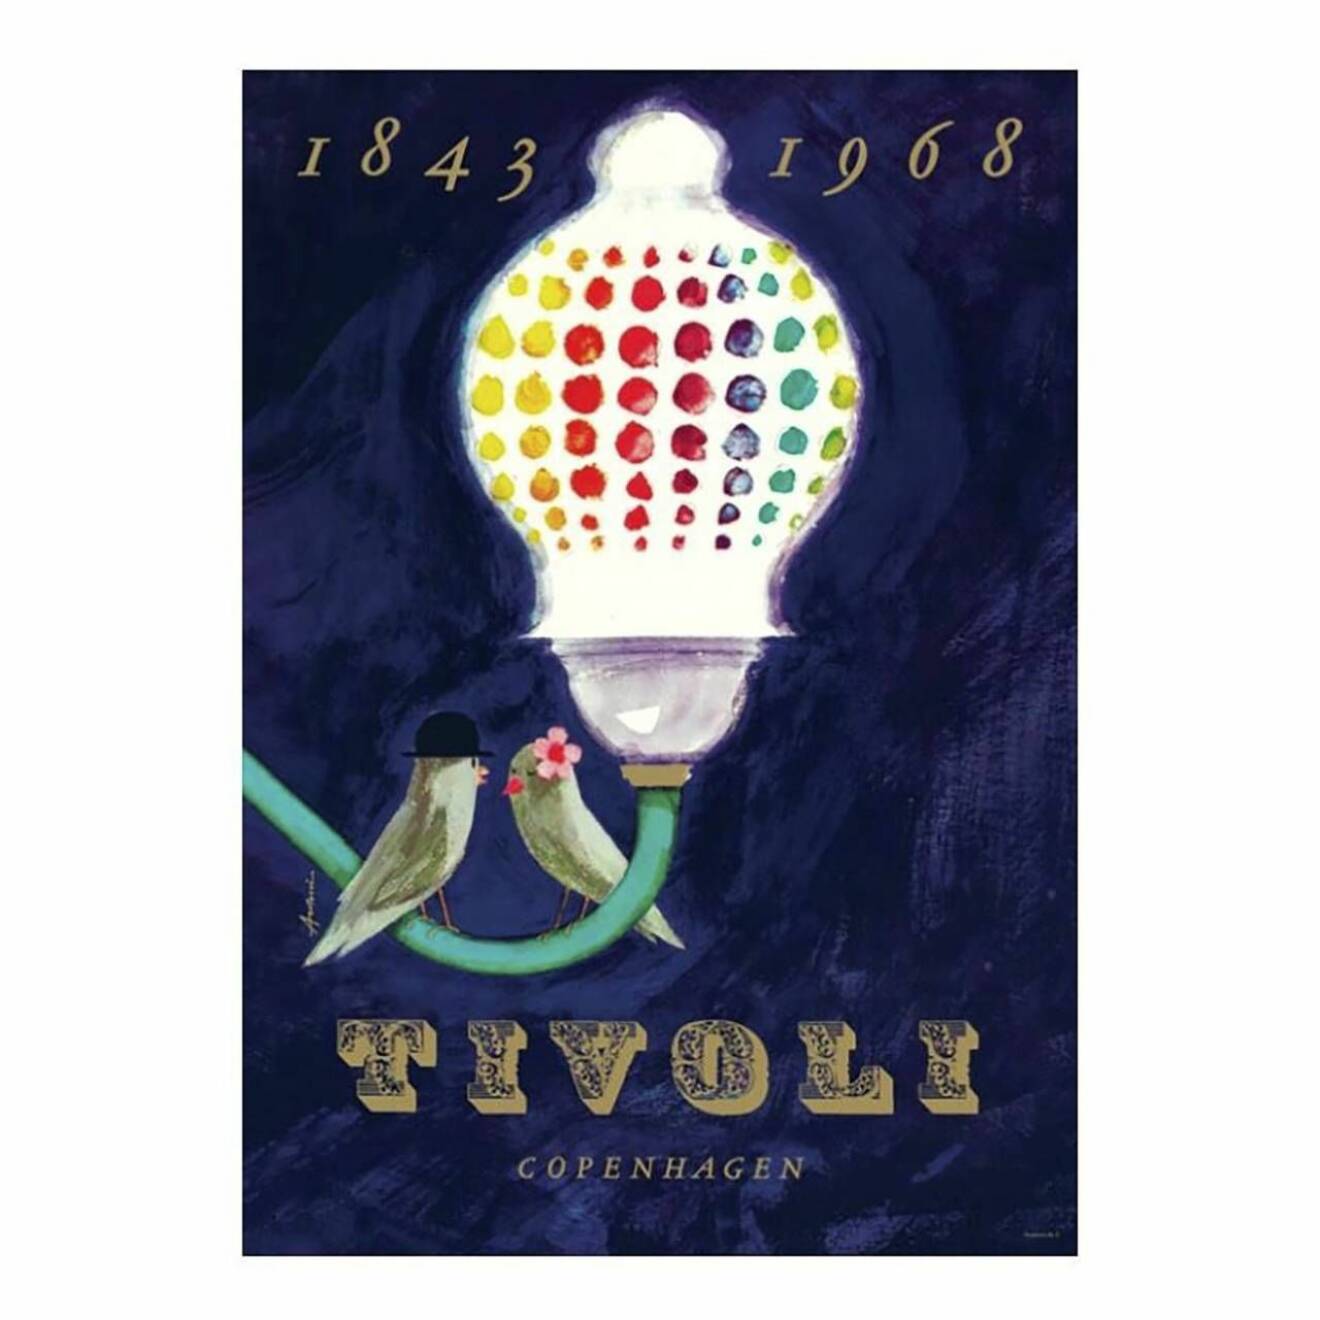 Särtryck av Tivolis jubileumsaffisch från 1968 av Ib Antoni 